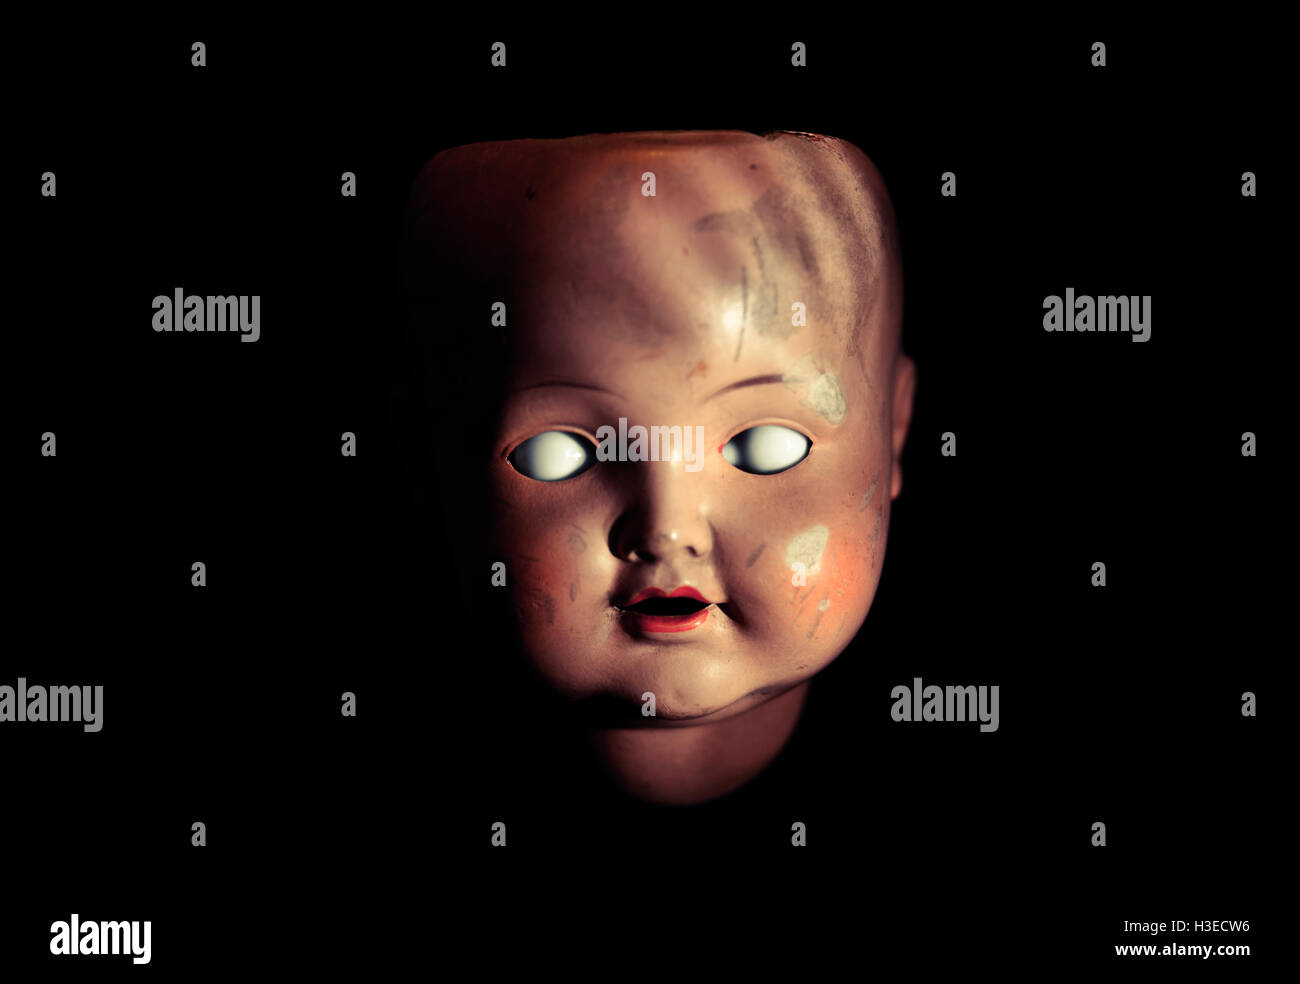 Creepy doll face Stock Photo